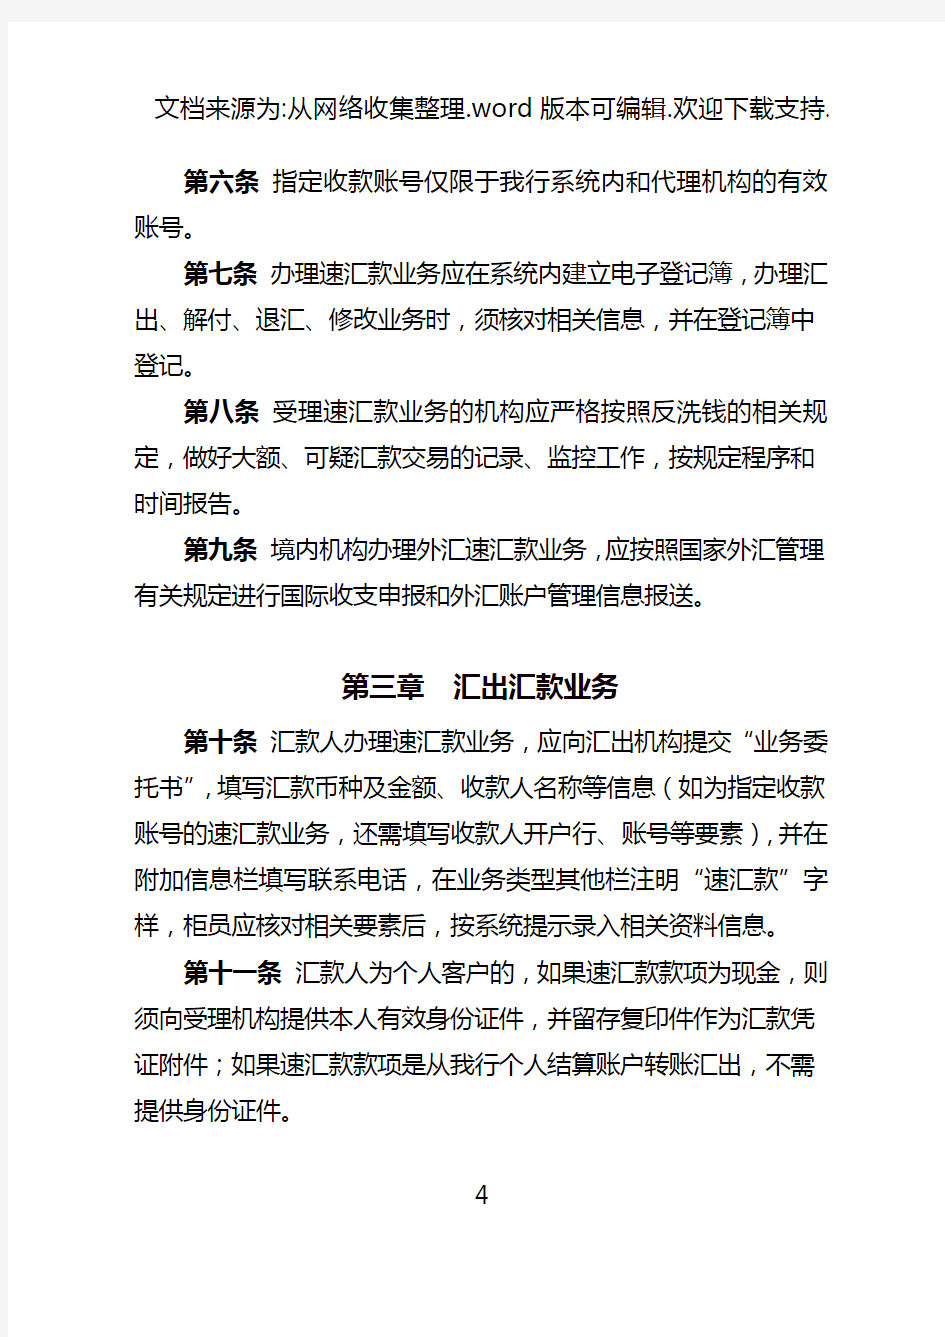 中国工商银行速汇款业务管理办法